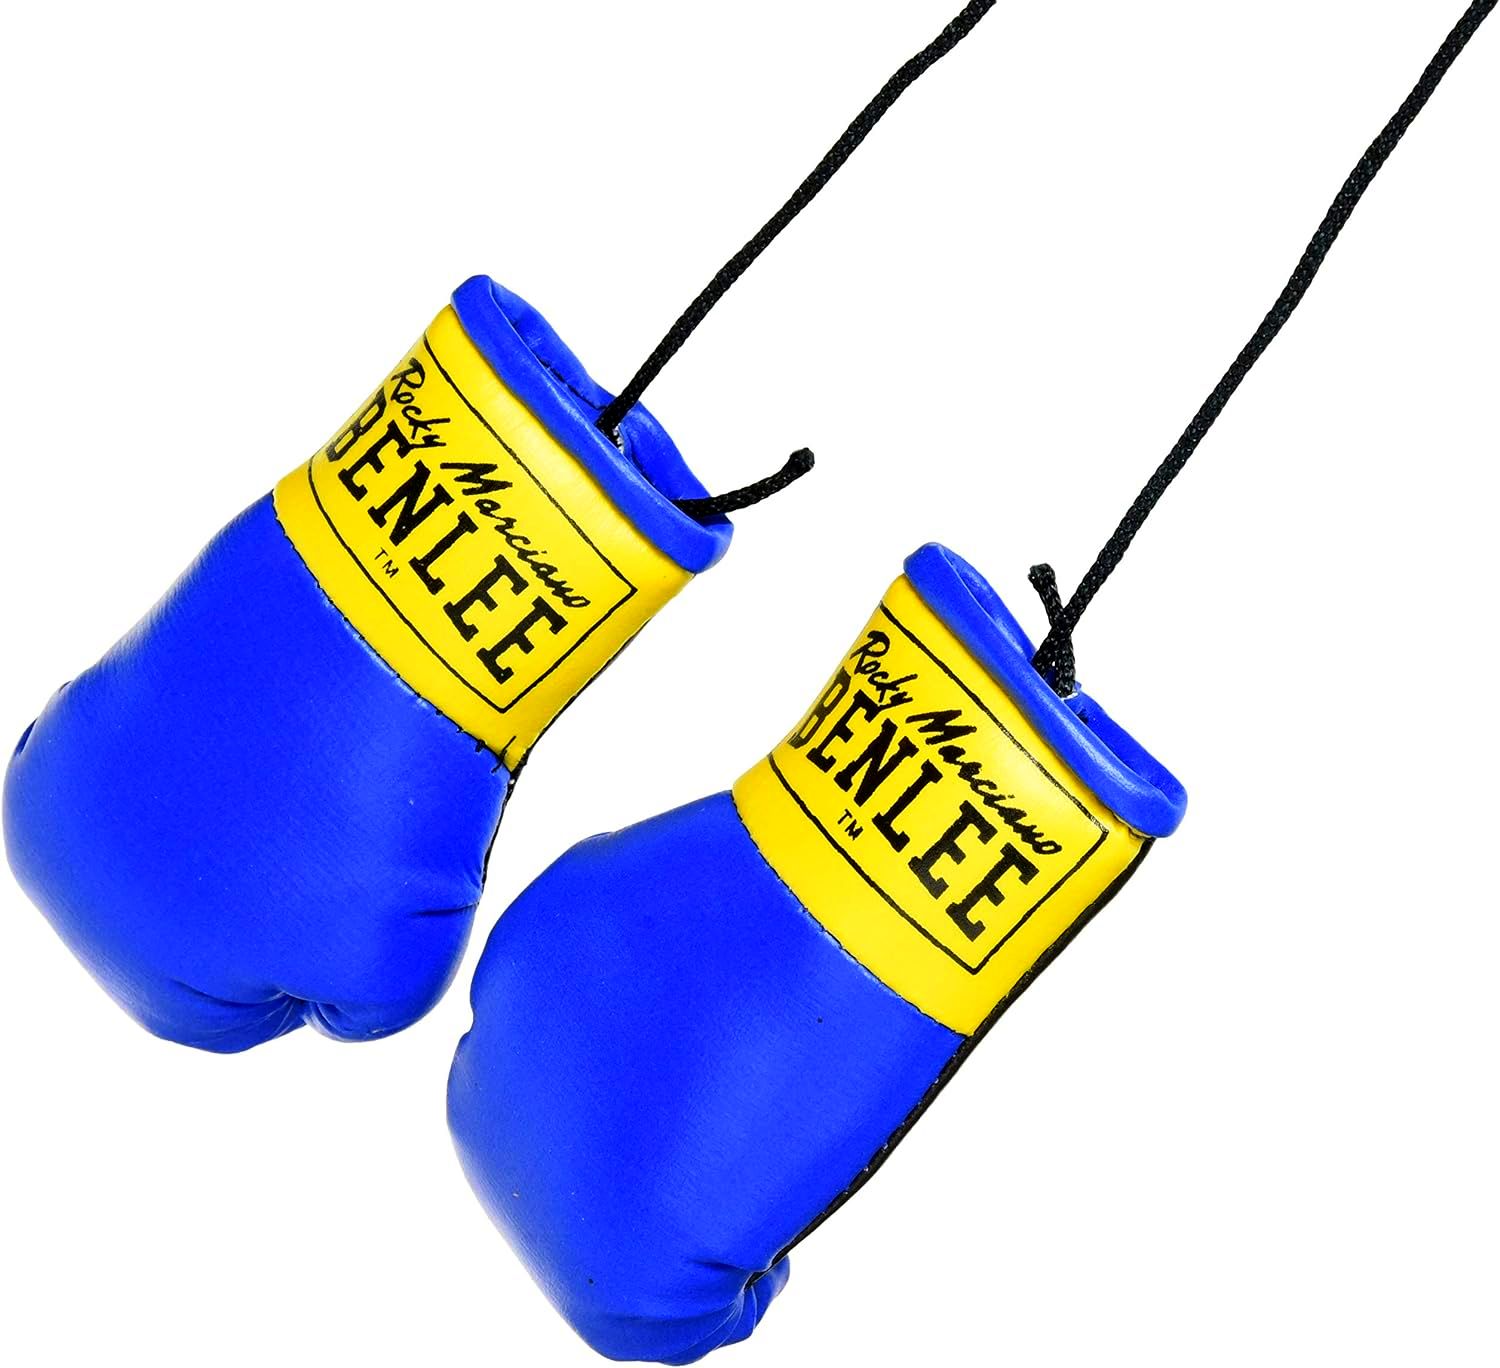  Брелок боксерские перчатки Benlee mini gloves синие 